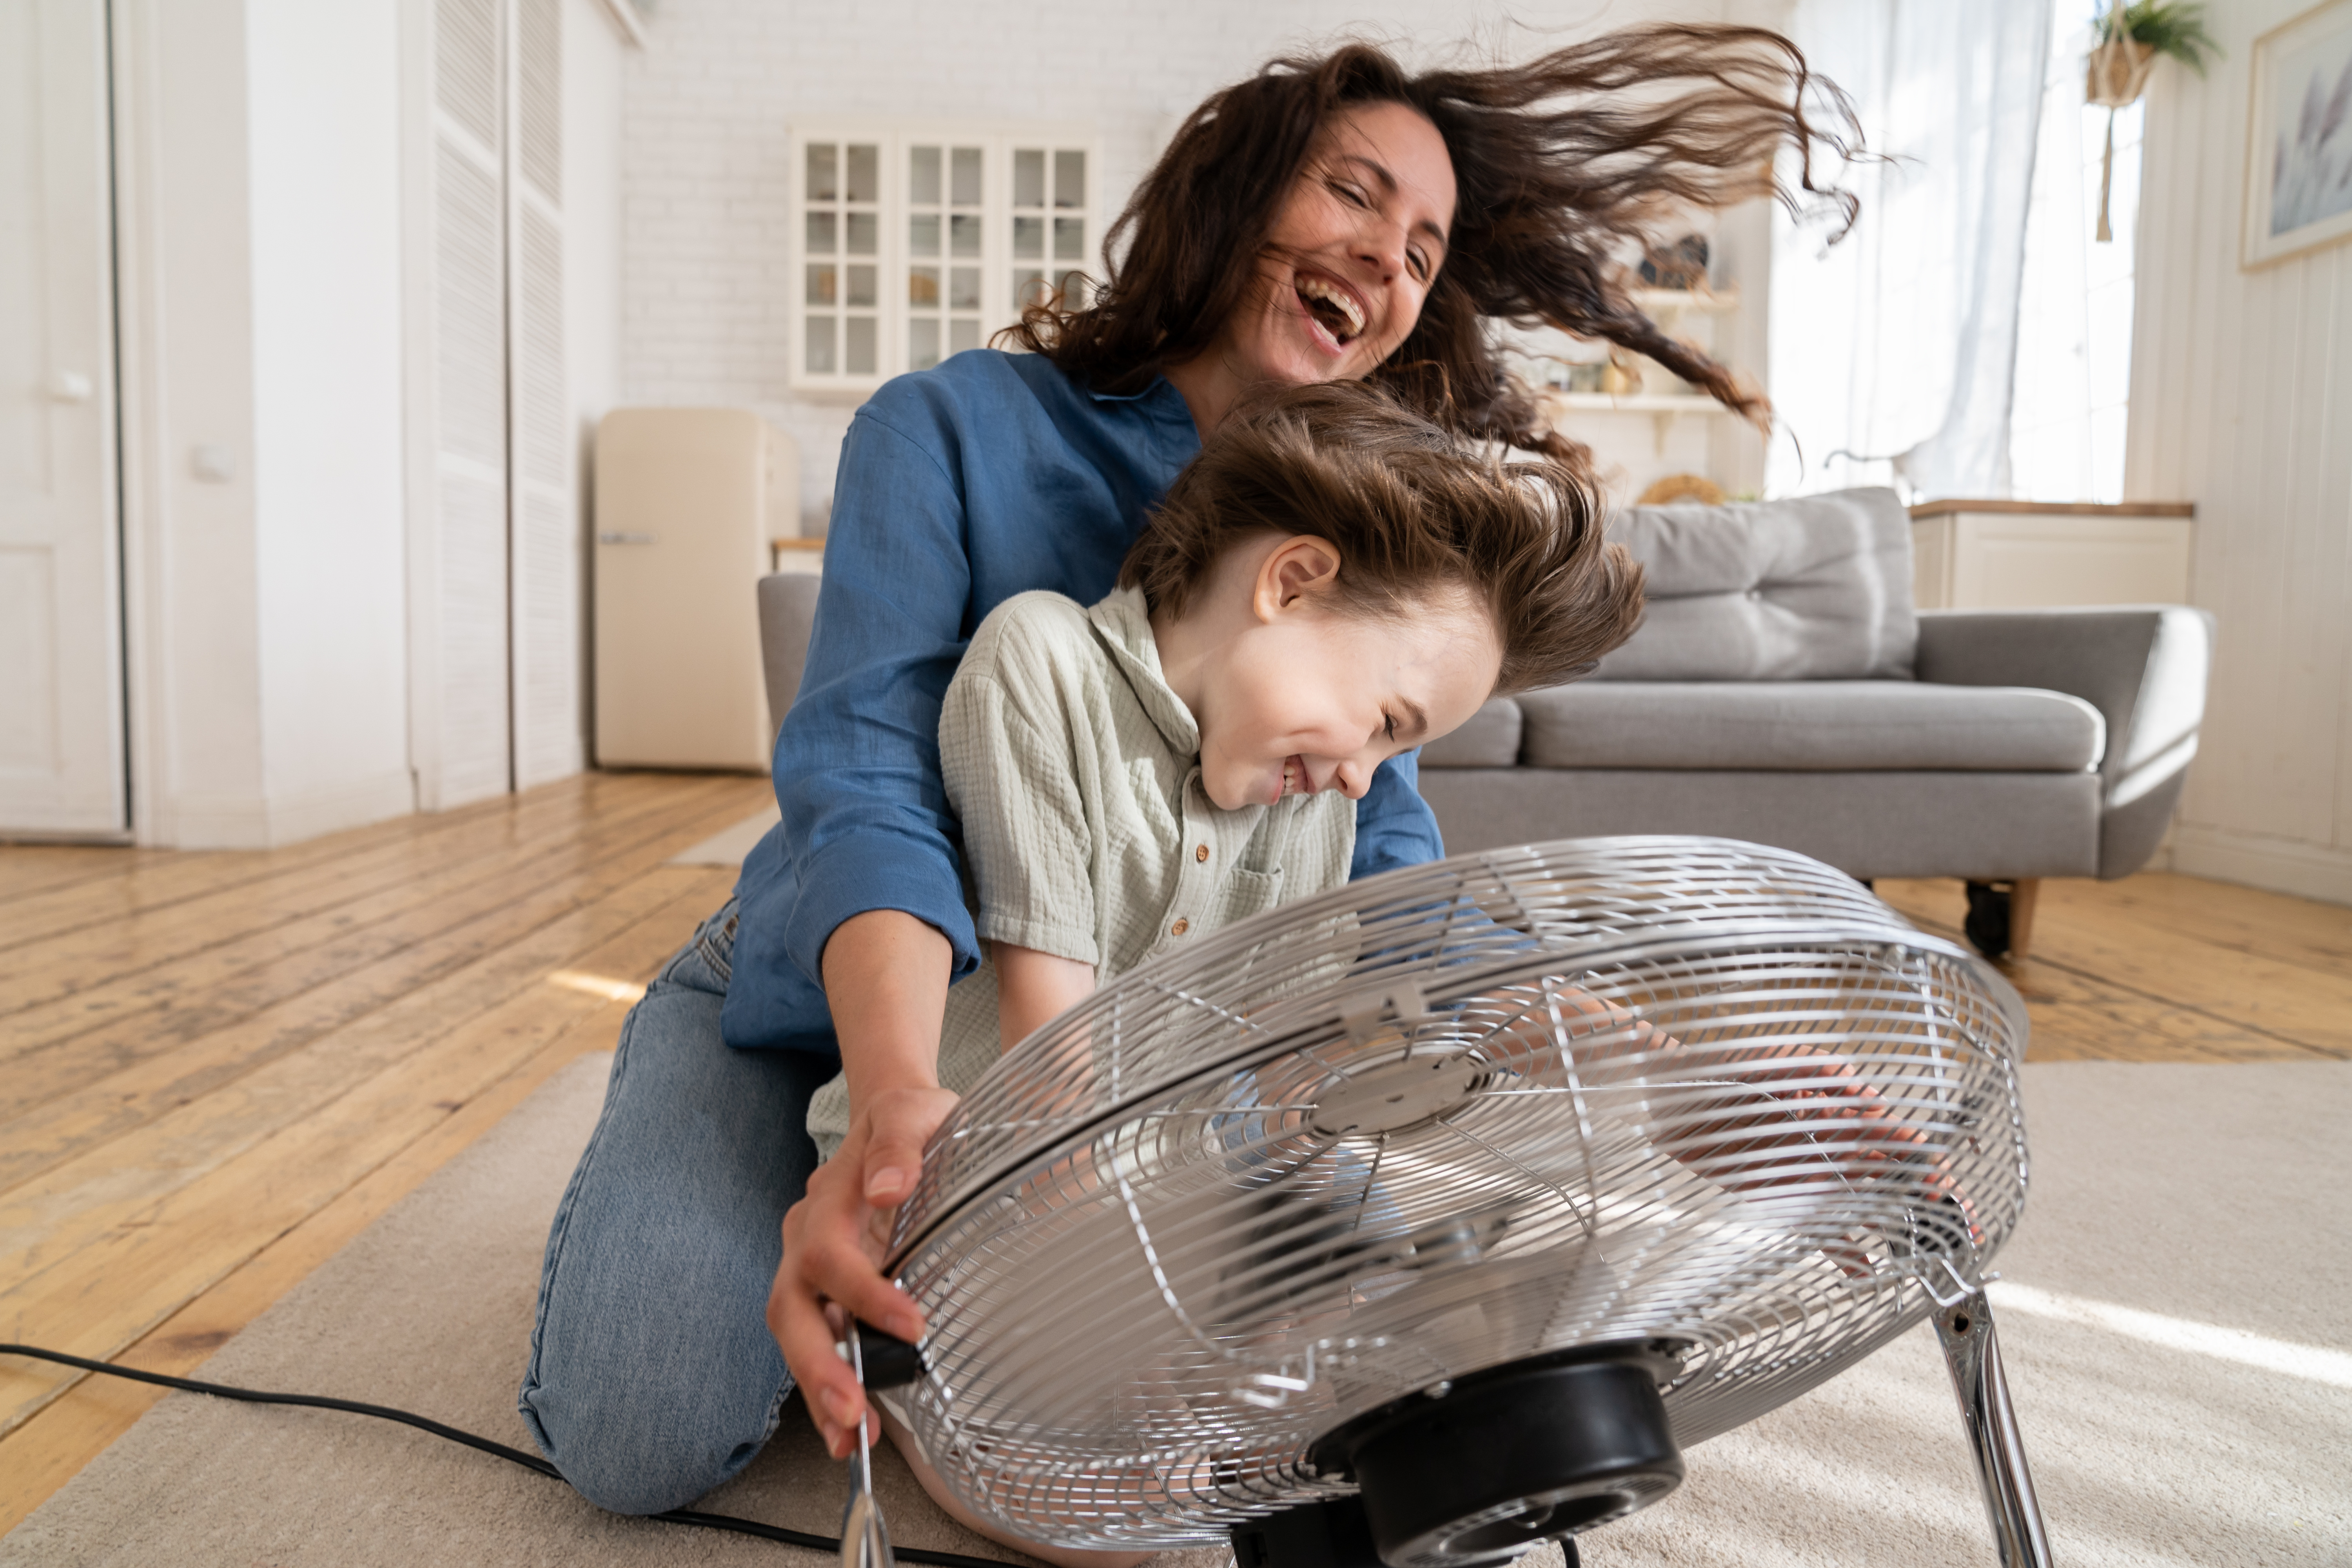 Les fortes chaleurs arrivent, c'est le moment d'équiper votre domicile d'un ventilateur performant © DimaBerlin, Adobe Stock